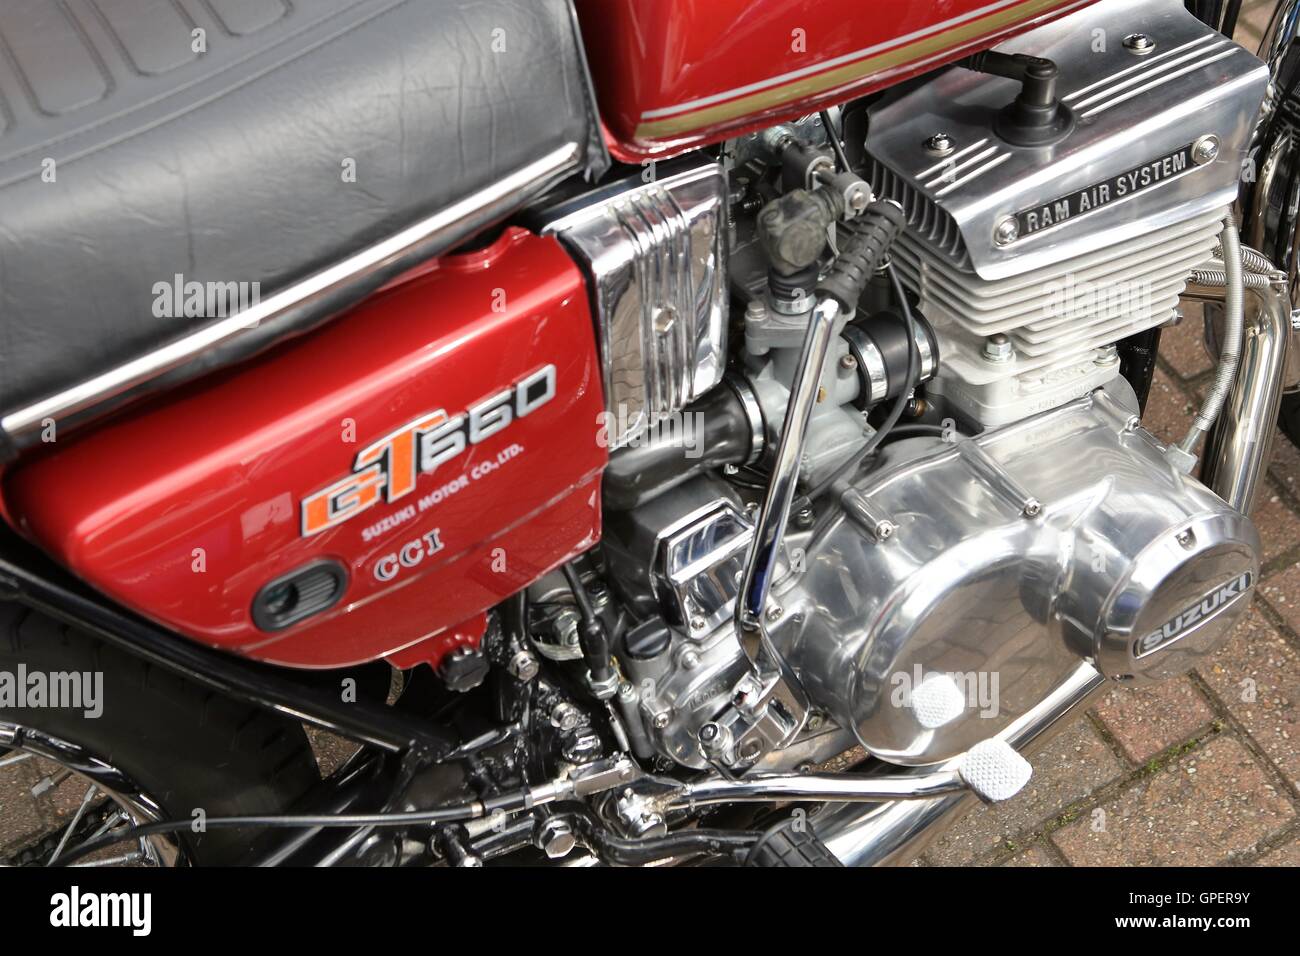 Susuki GT 550 moto nel classico rosso 2 cp motore close up Foto Stock